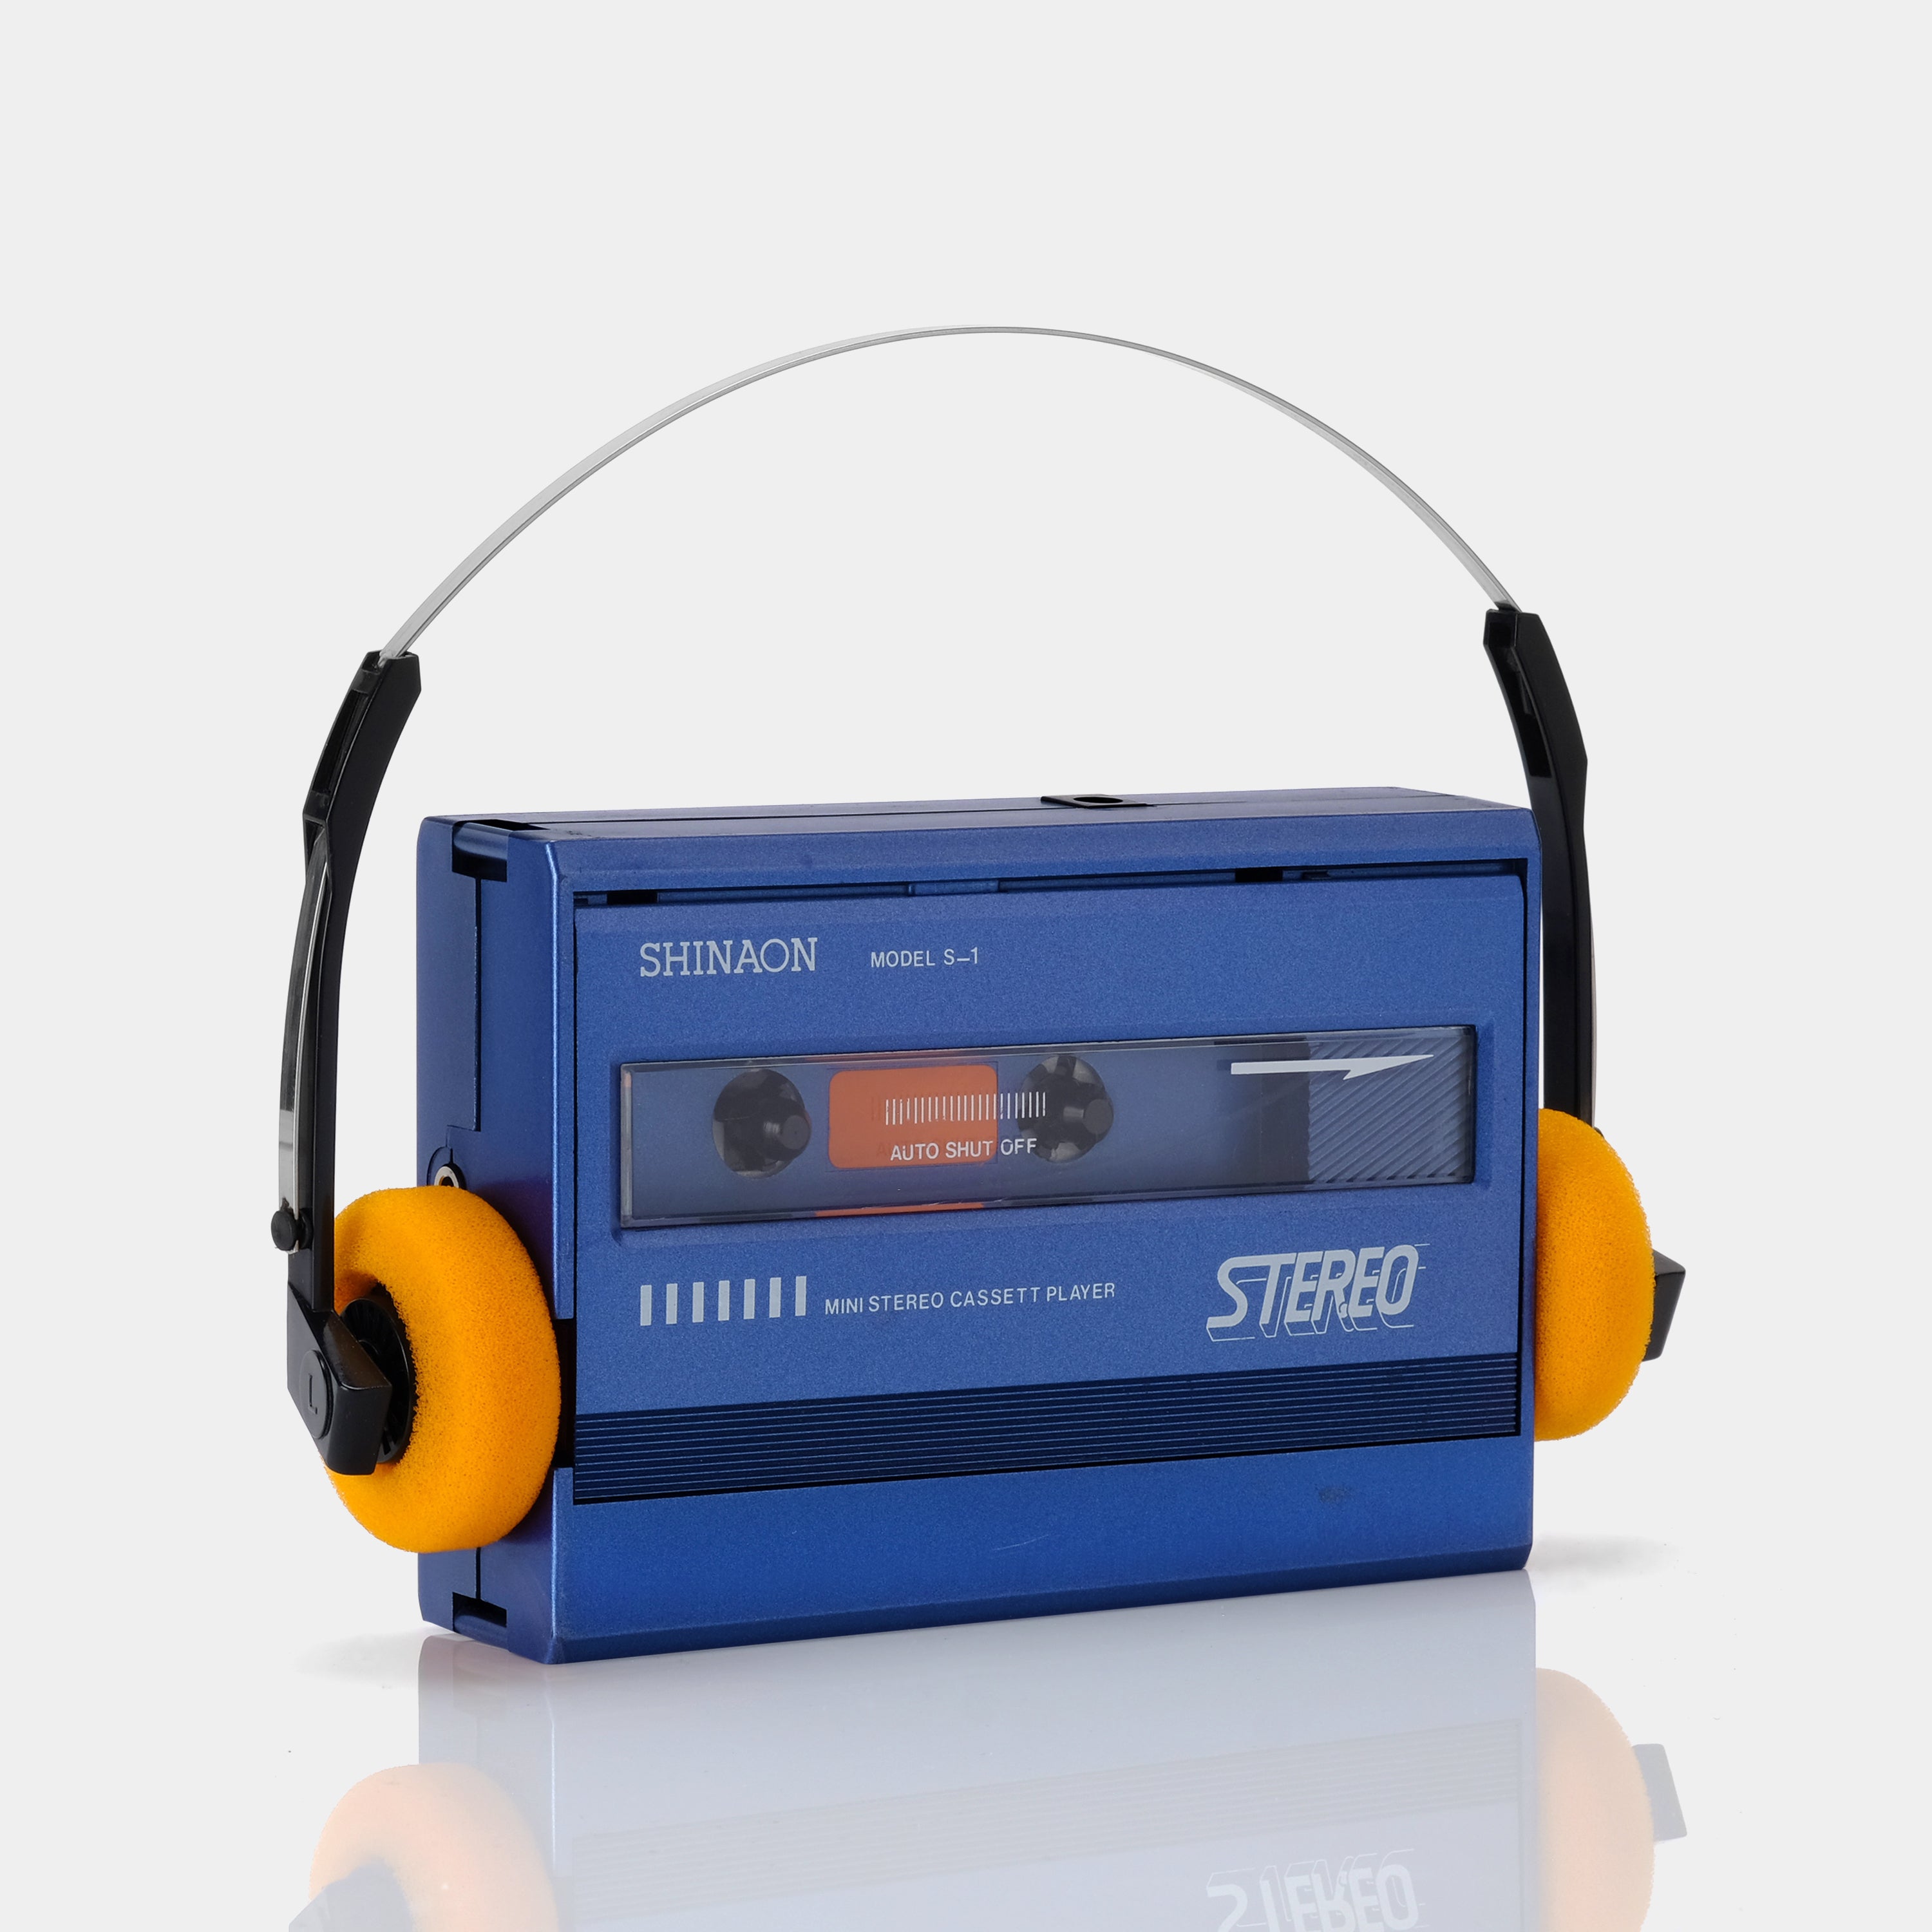 Shinaon Model S-1 Mini Stereo Portable Cassette Player